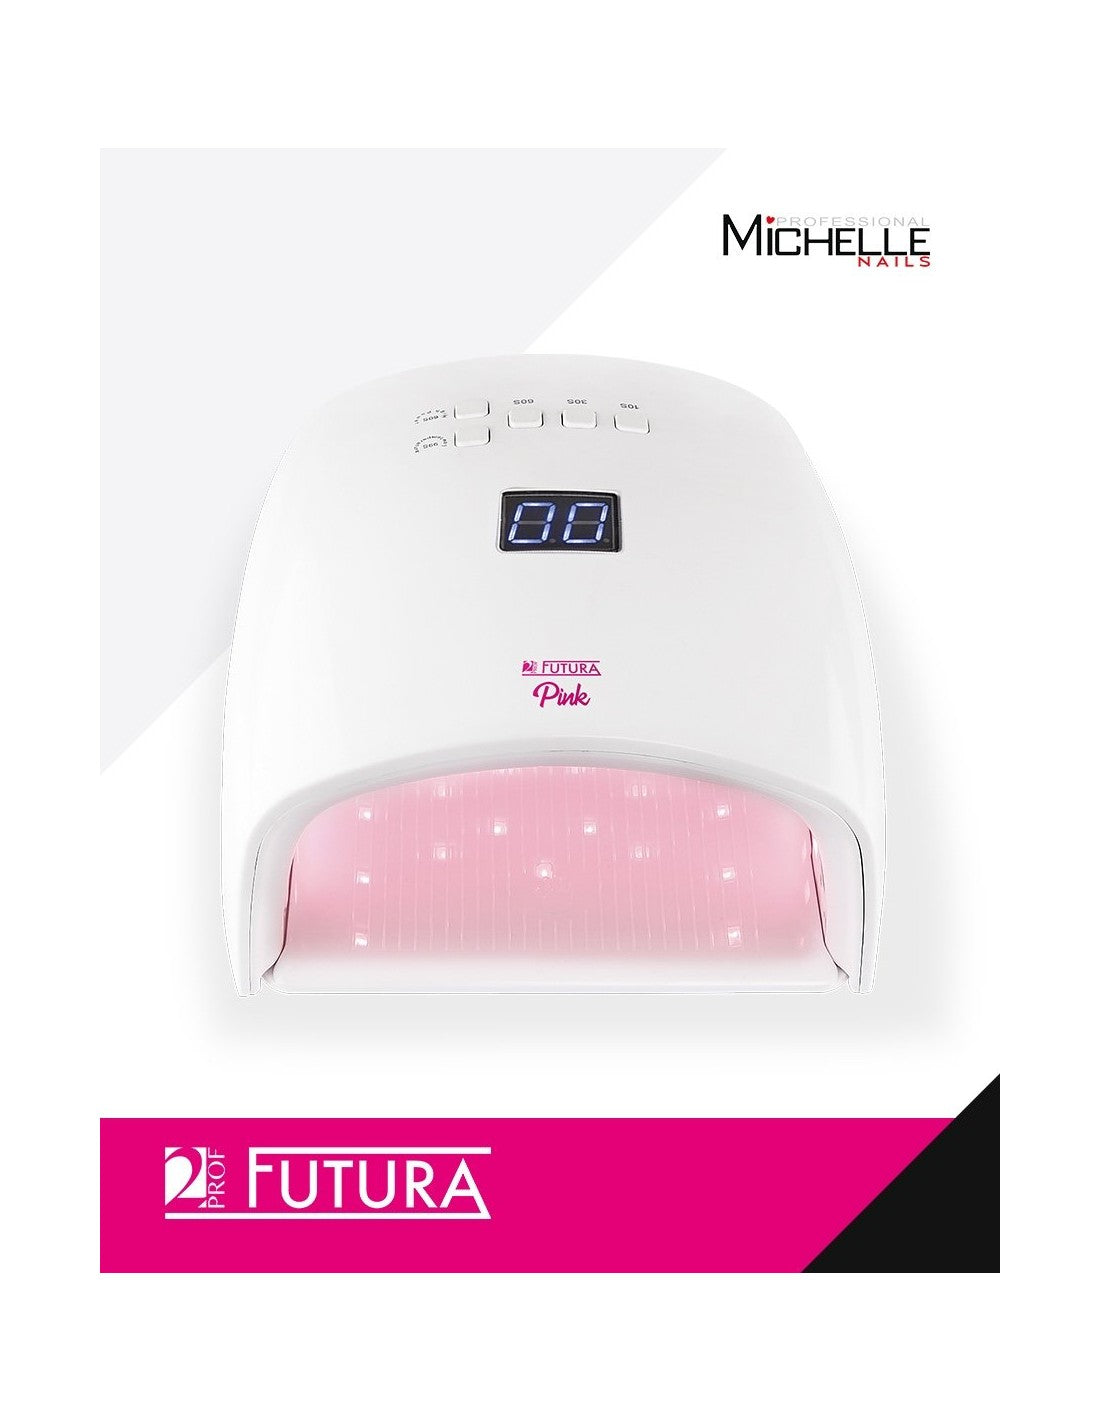 Lampada UV LED Futura Pink 48w con timer, Sensore automatico – Gellica